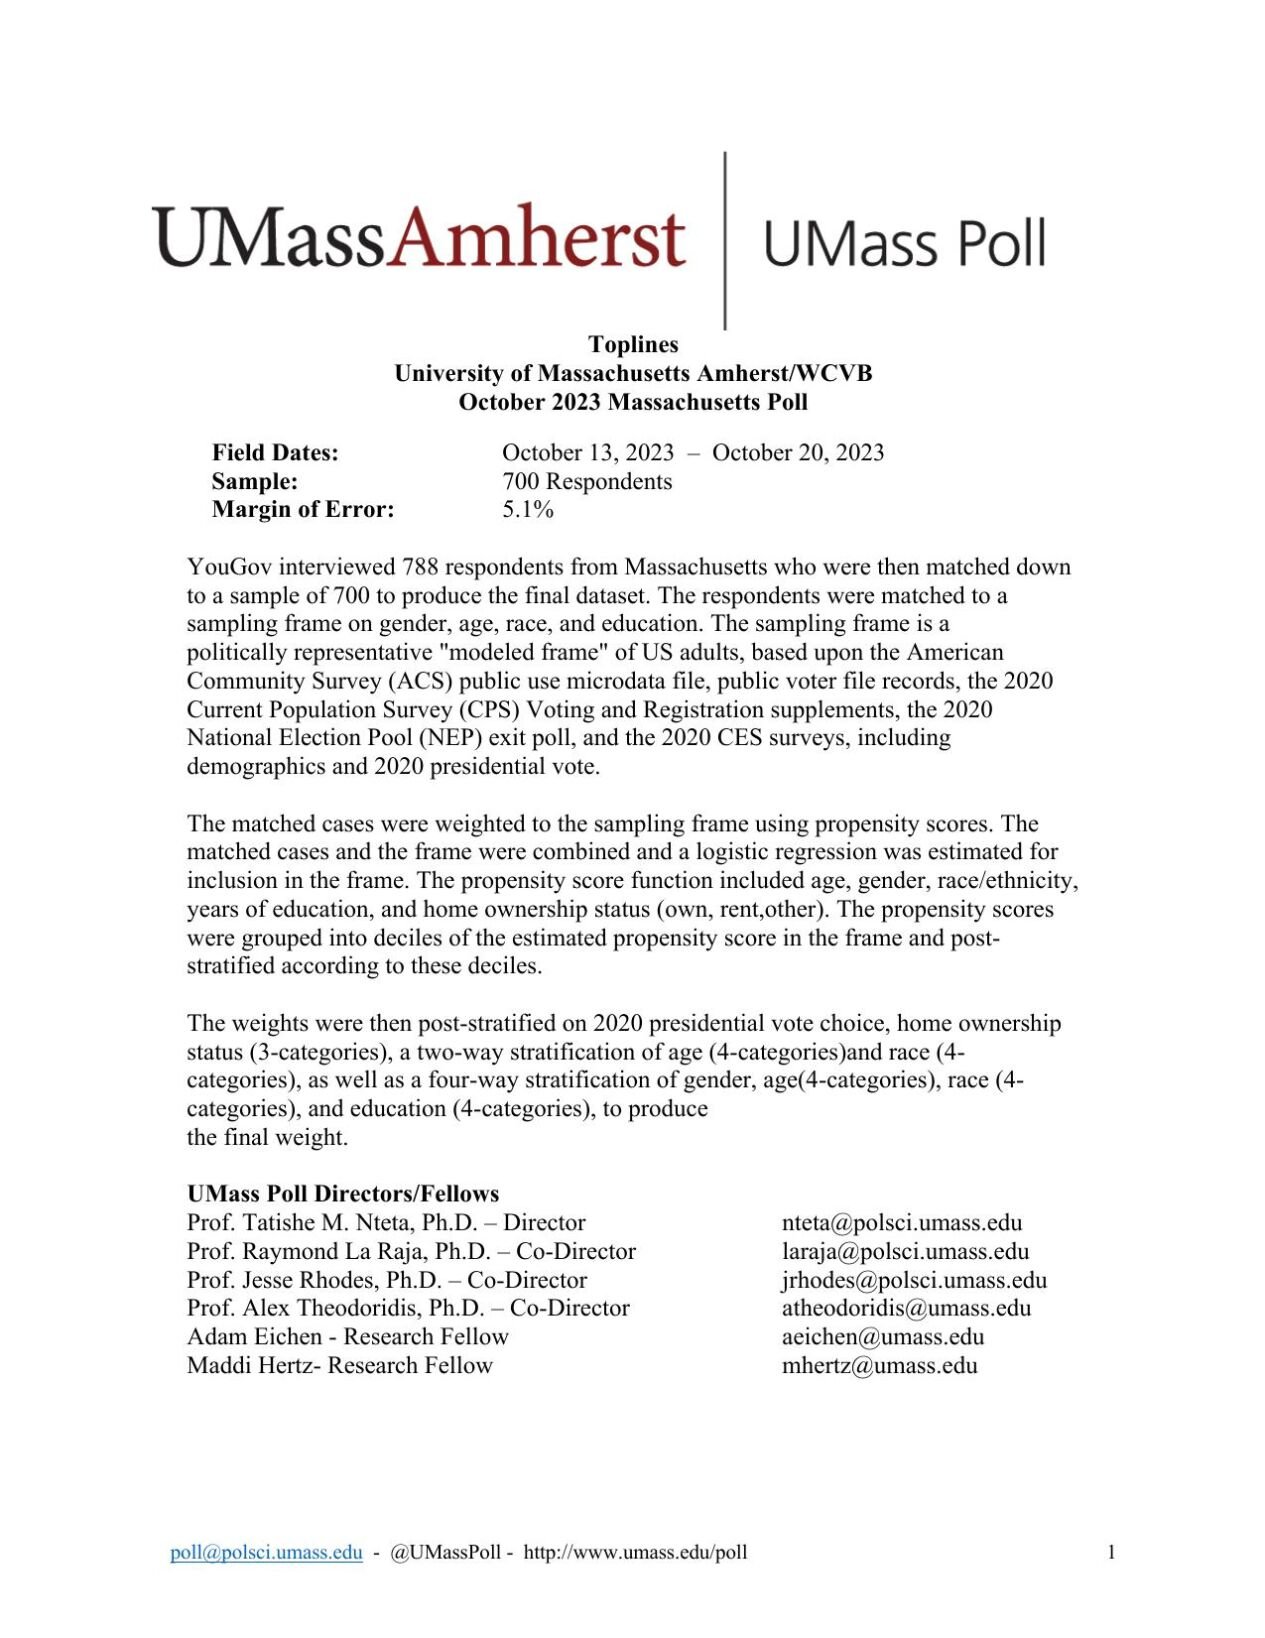 UMass/WCVB Poll 10/23/23